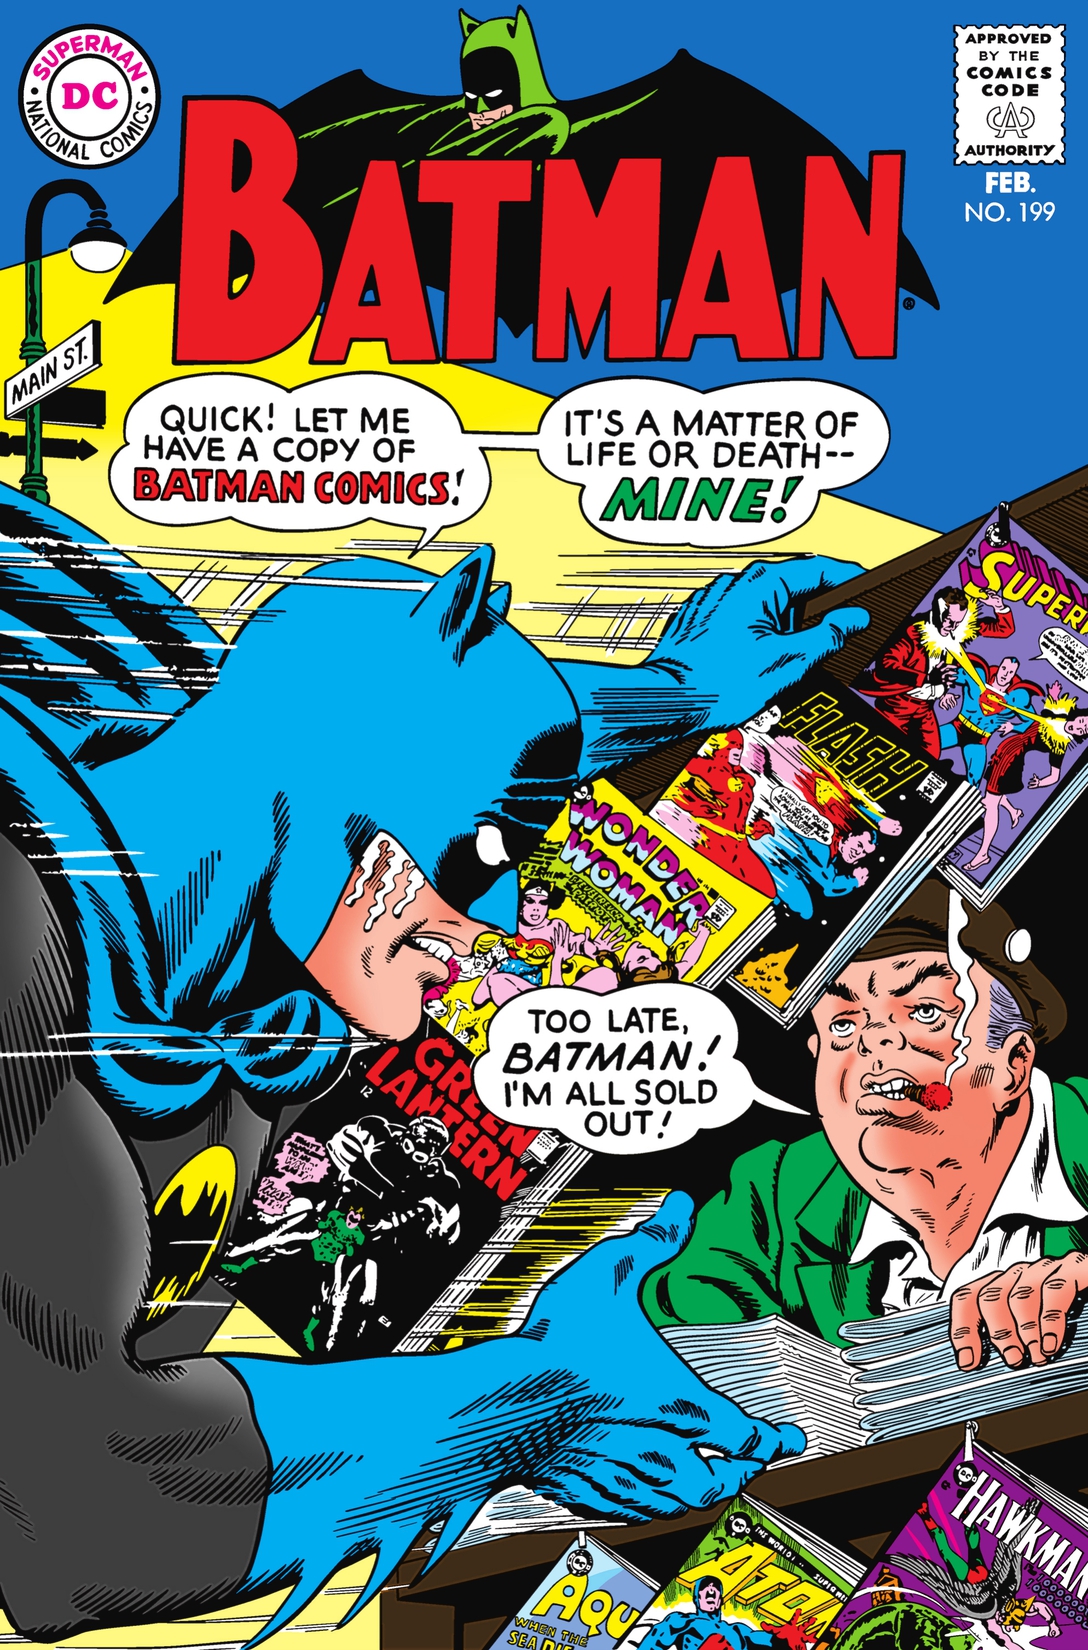 Batman (1940-) #199 preview images